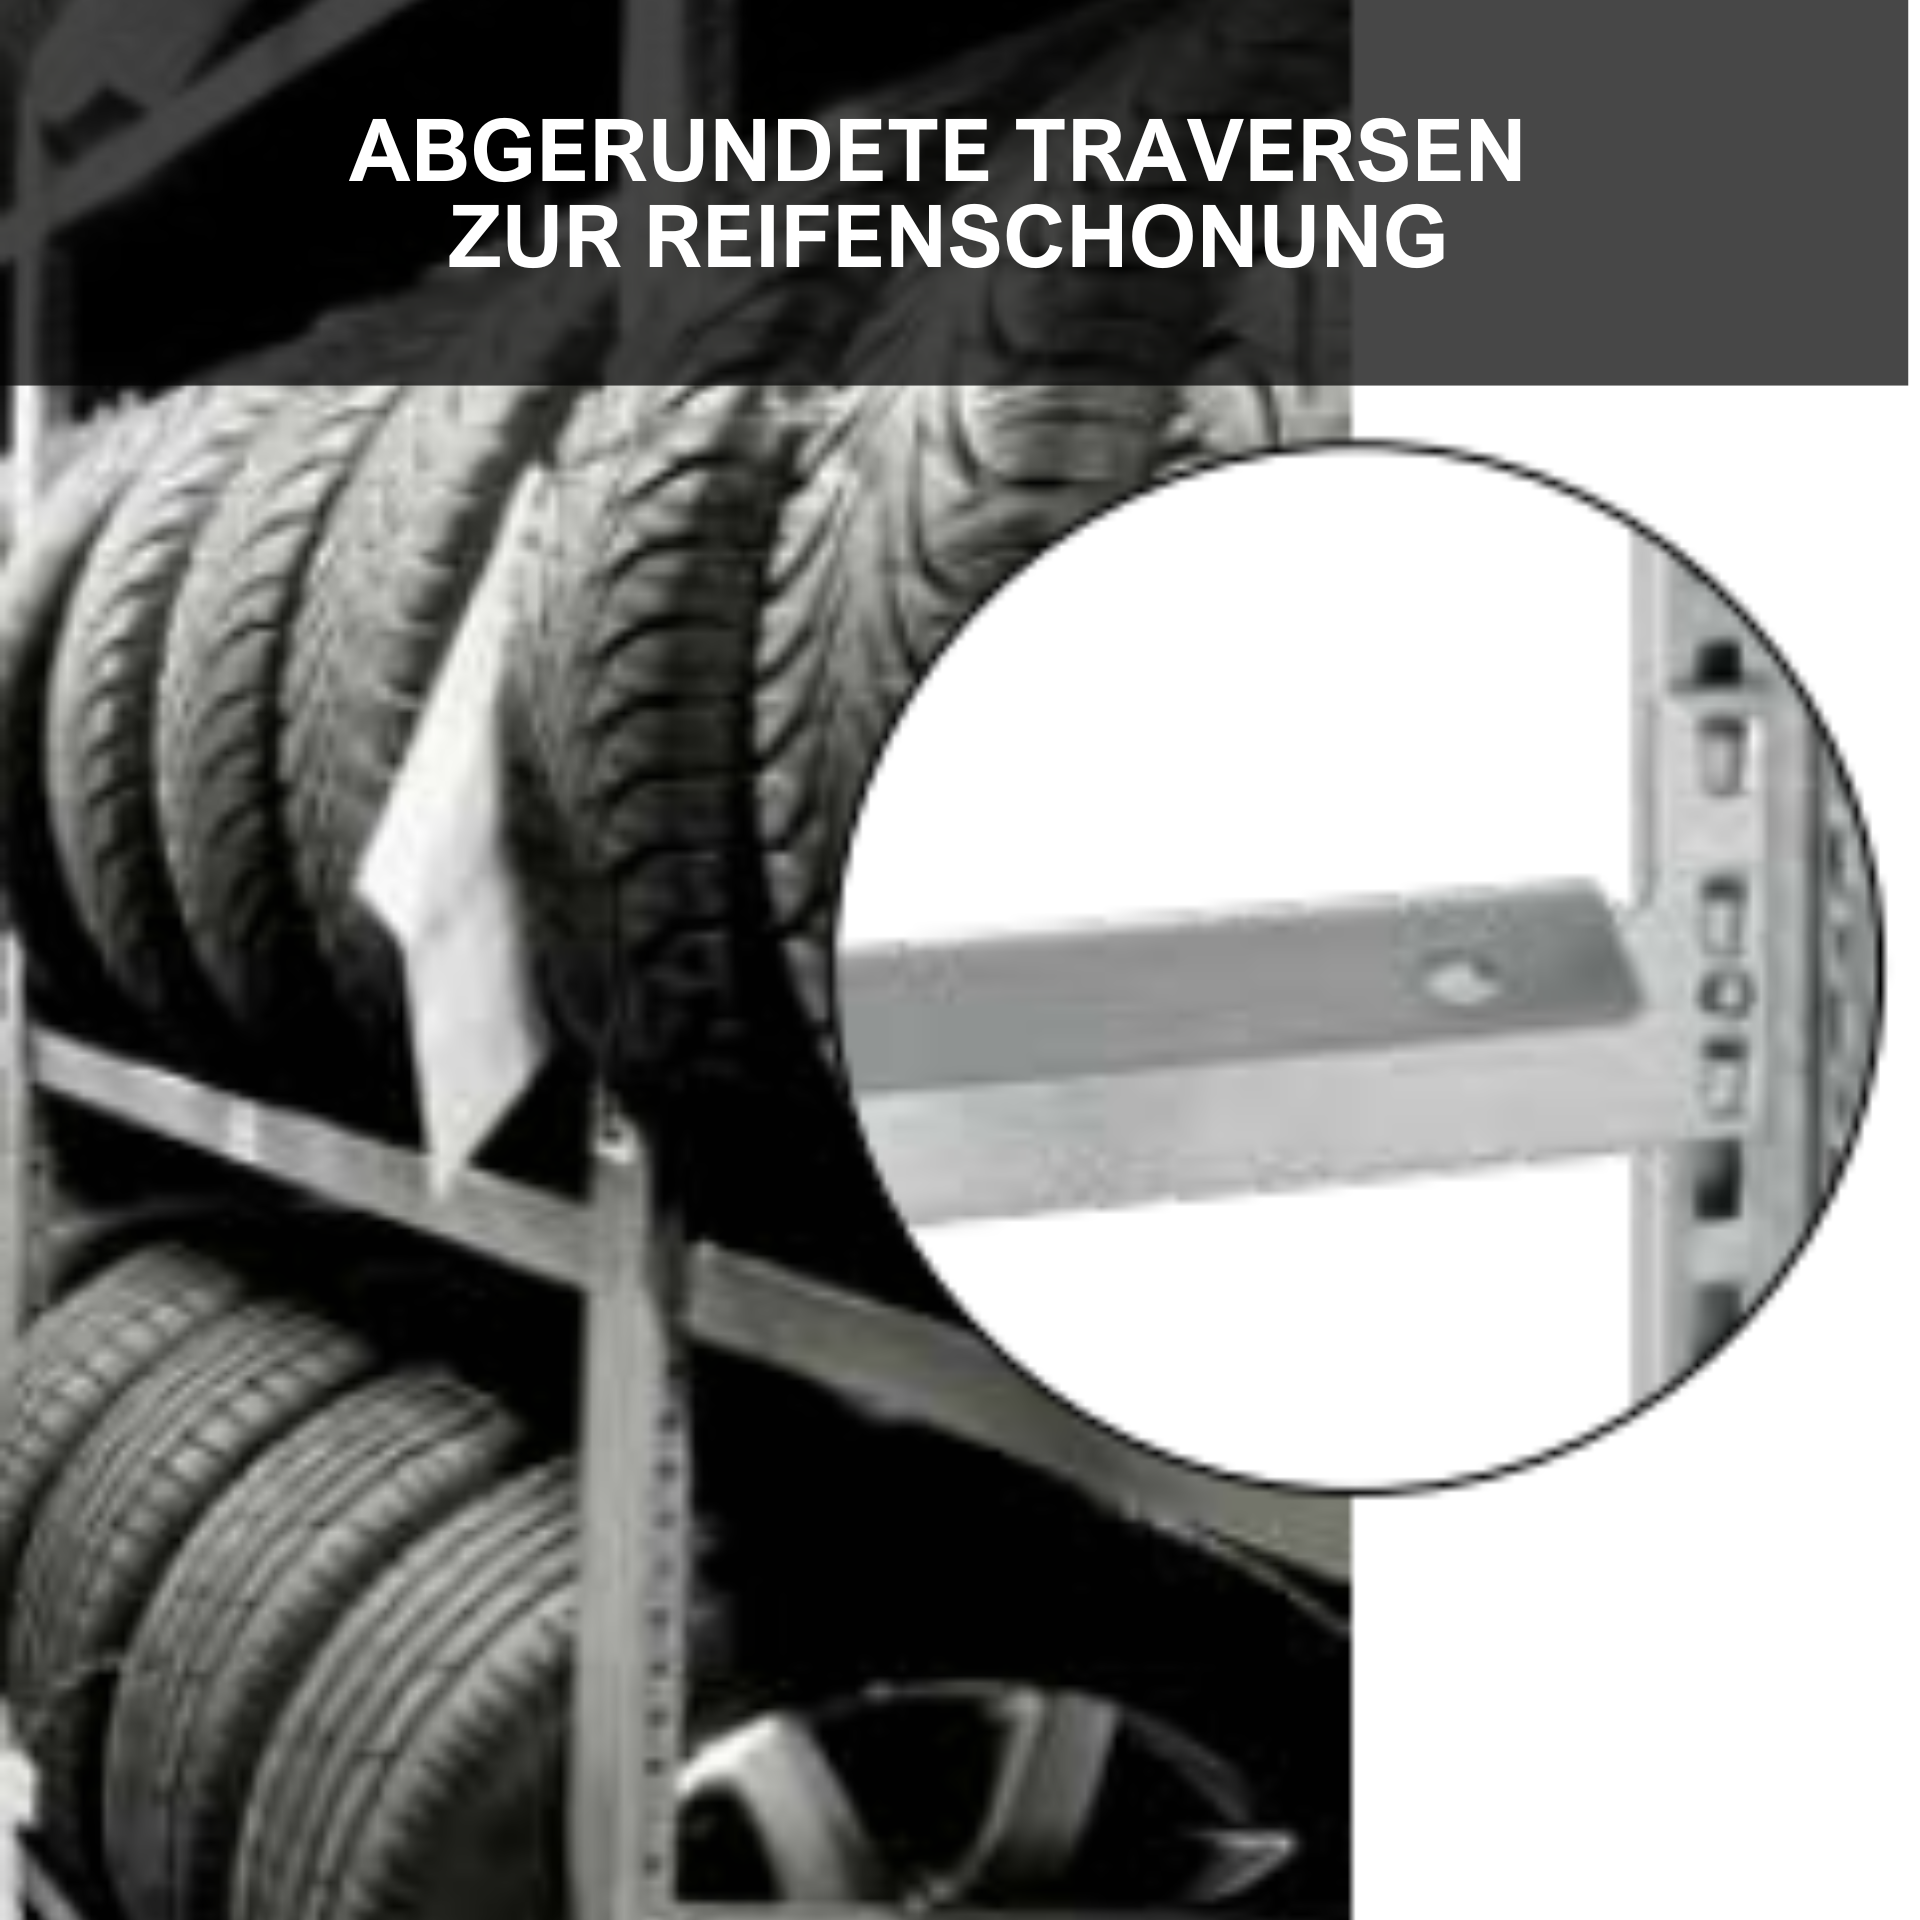 Reifenregal TIRE PRO Made in Germany | HxBxT 250x100x43cm | 4 Ebenen | 150kg Fachlast | Bis zu 5 Reifen pro Ebene | Verzinkt